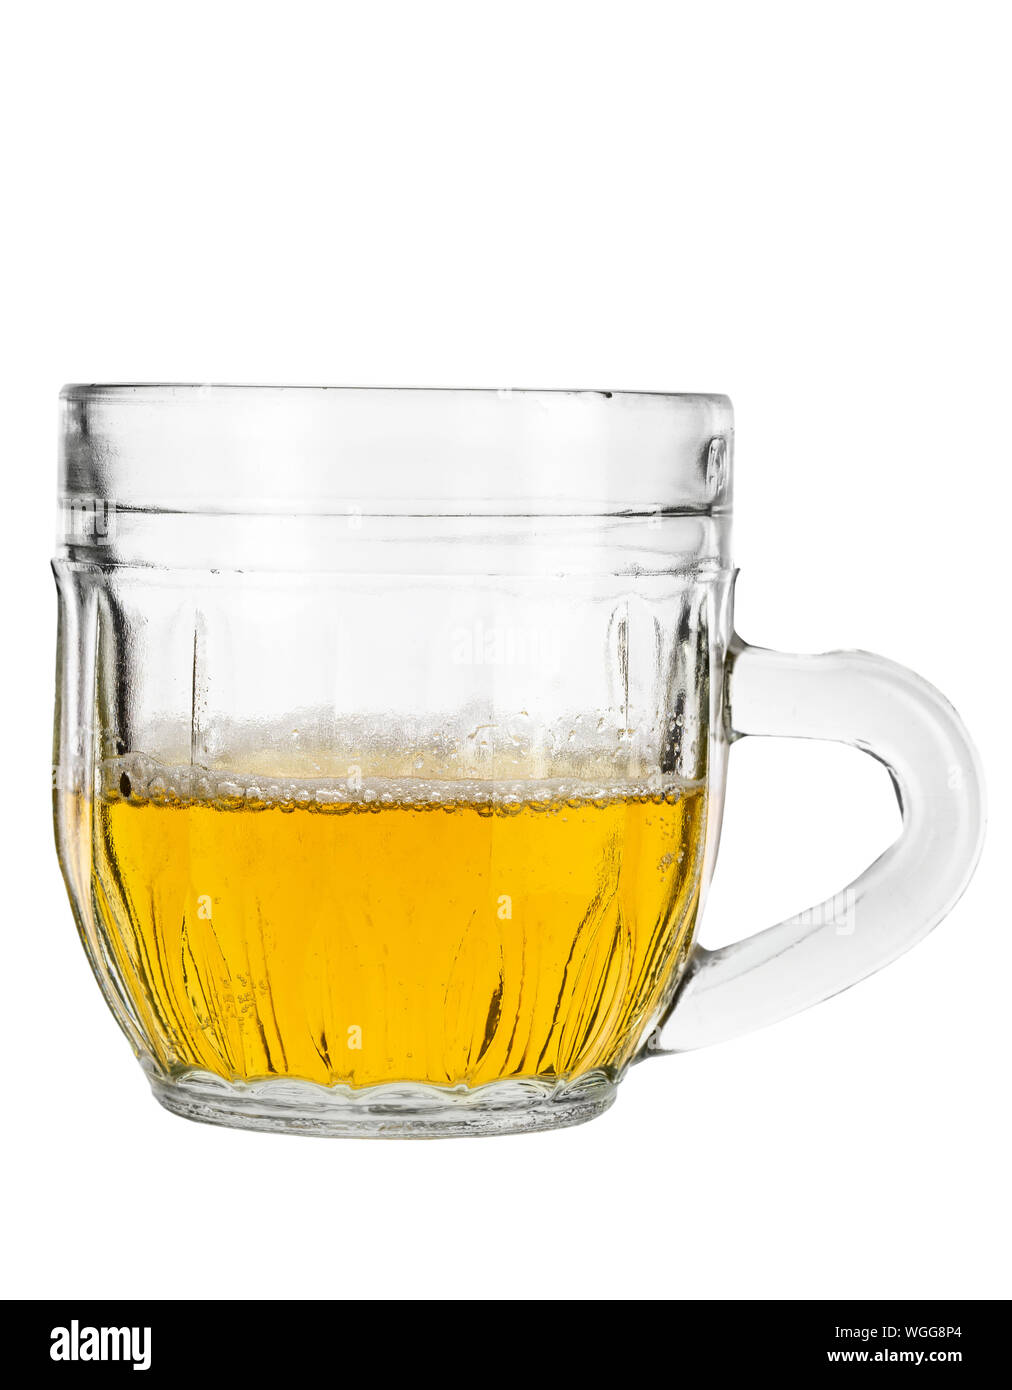 Mezza piena di vetro il boccale di birra su uno sfondo bianco.File contiene il percorso di clipping Foto Stock